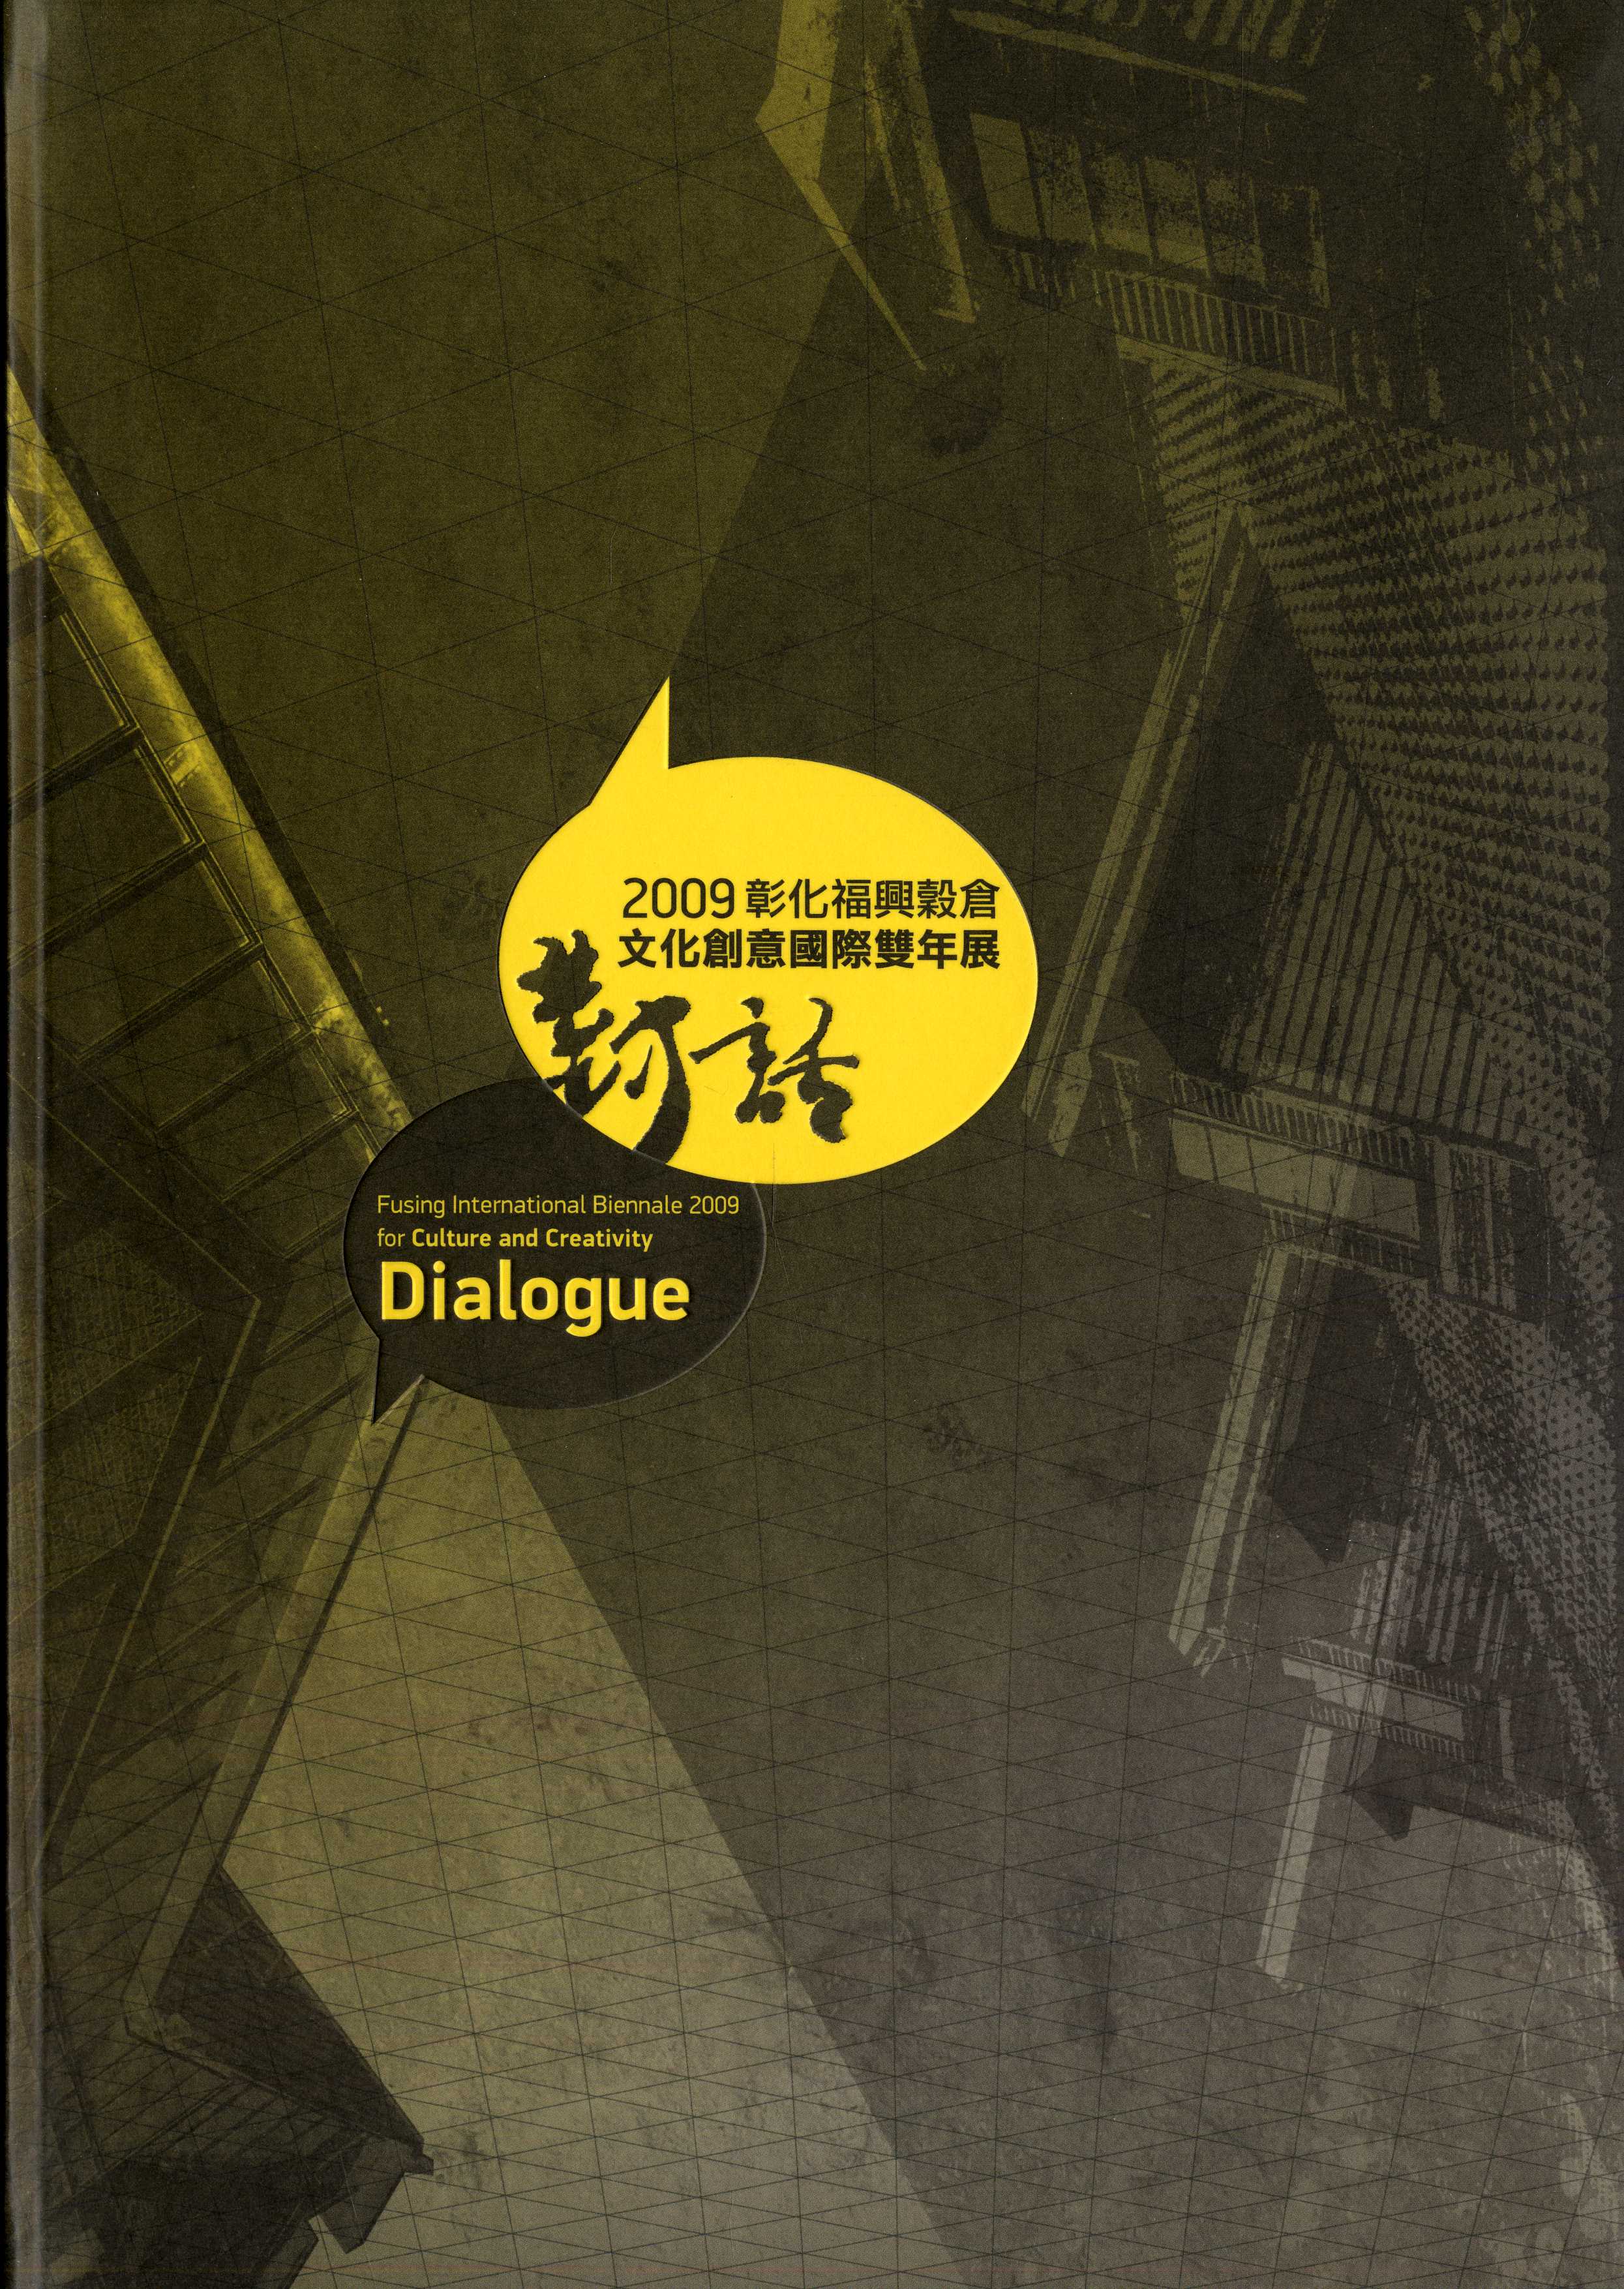 2009彰化福興穀倉文化創意國際雙年展專輯